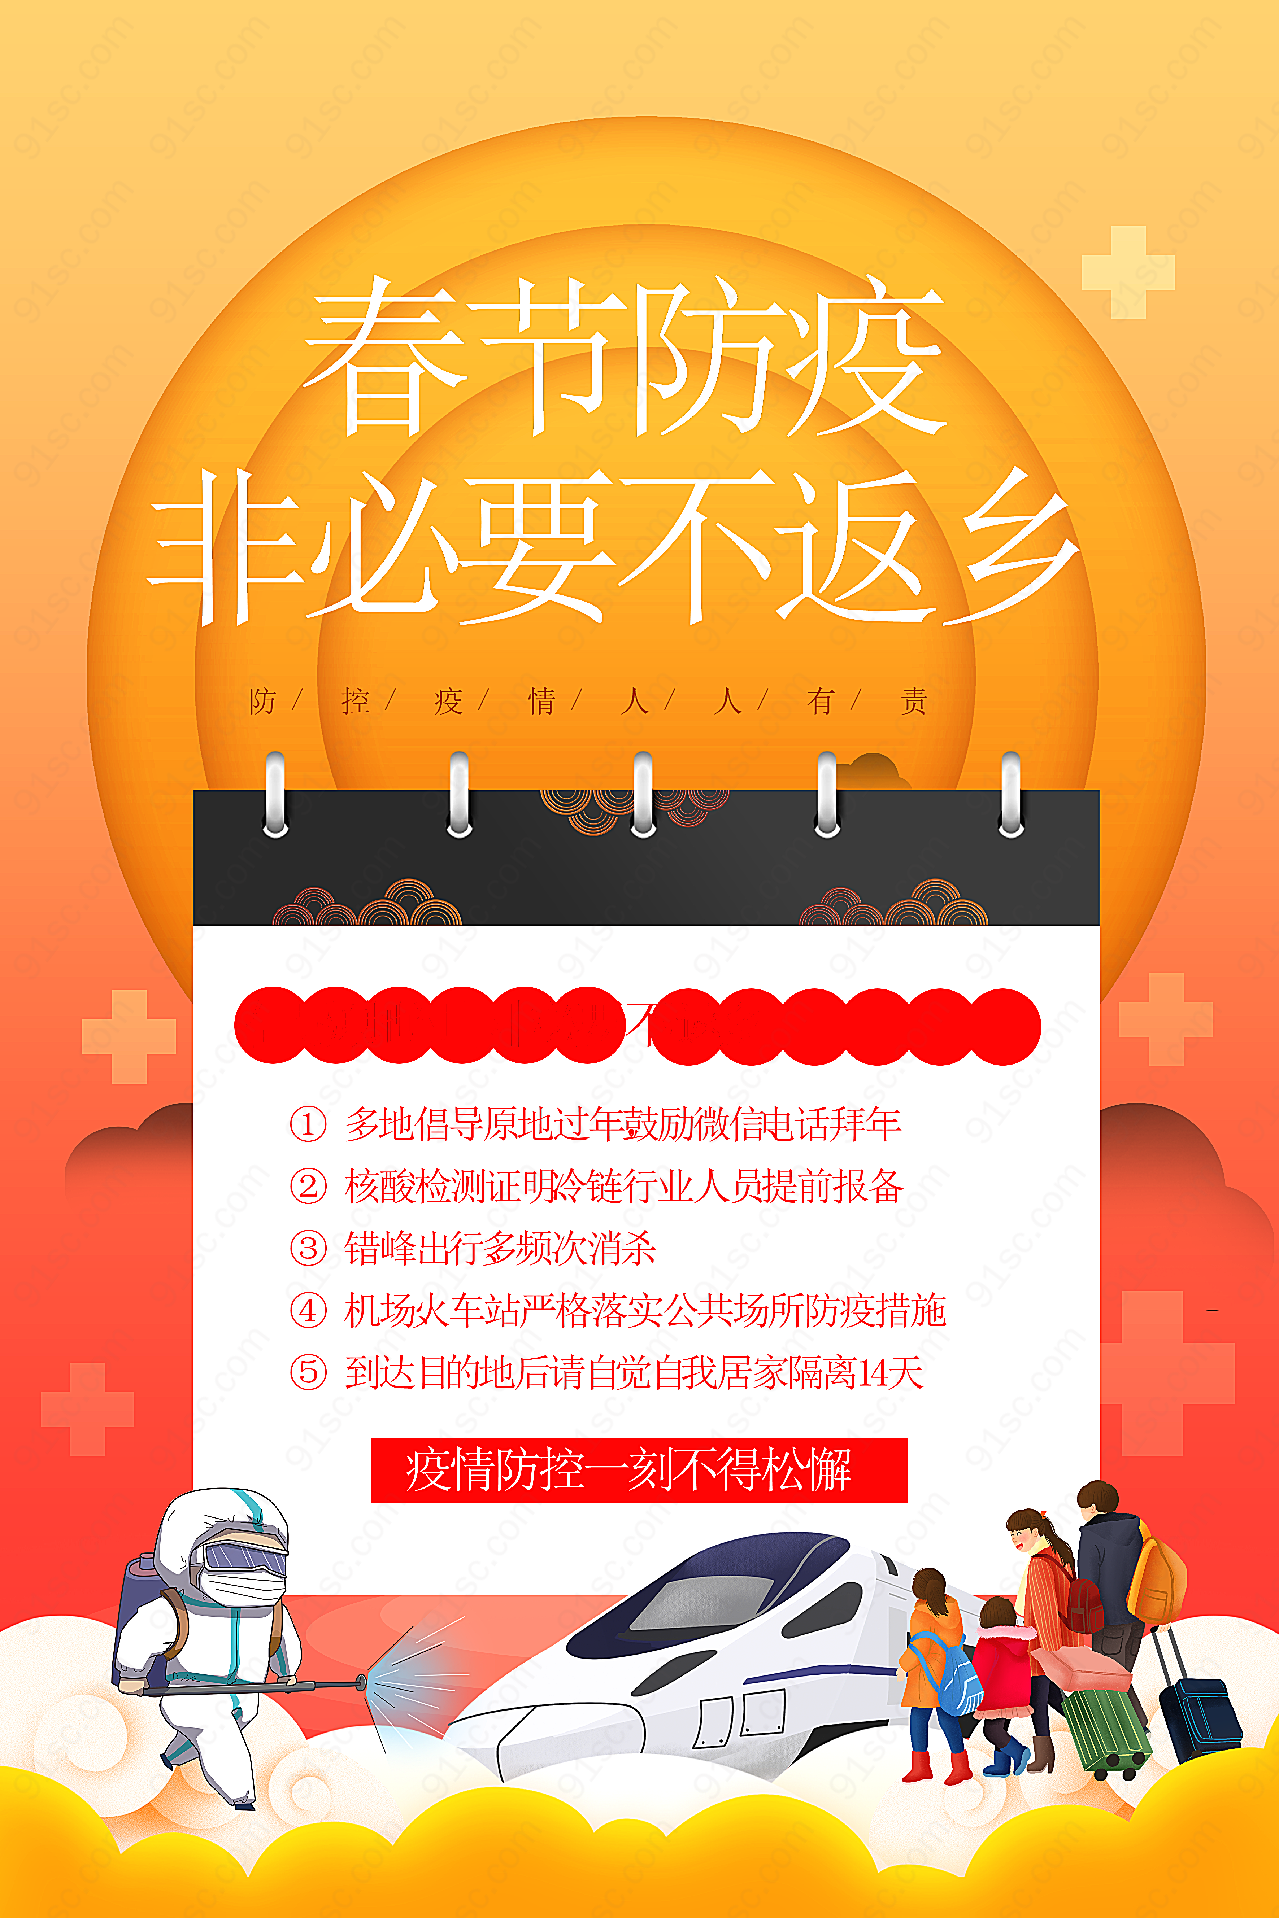 春节防疫倡议海报平面广告